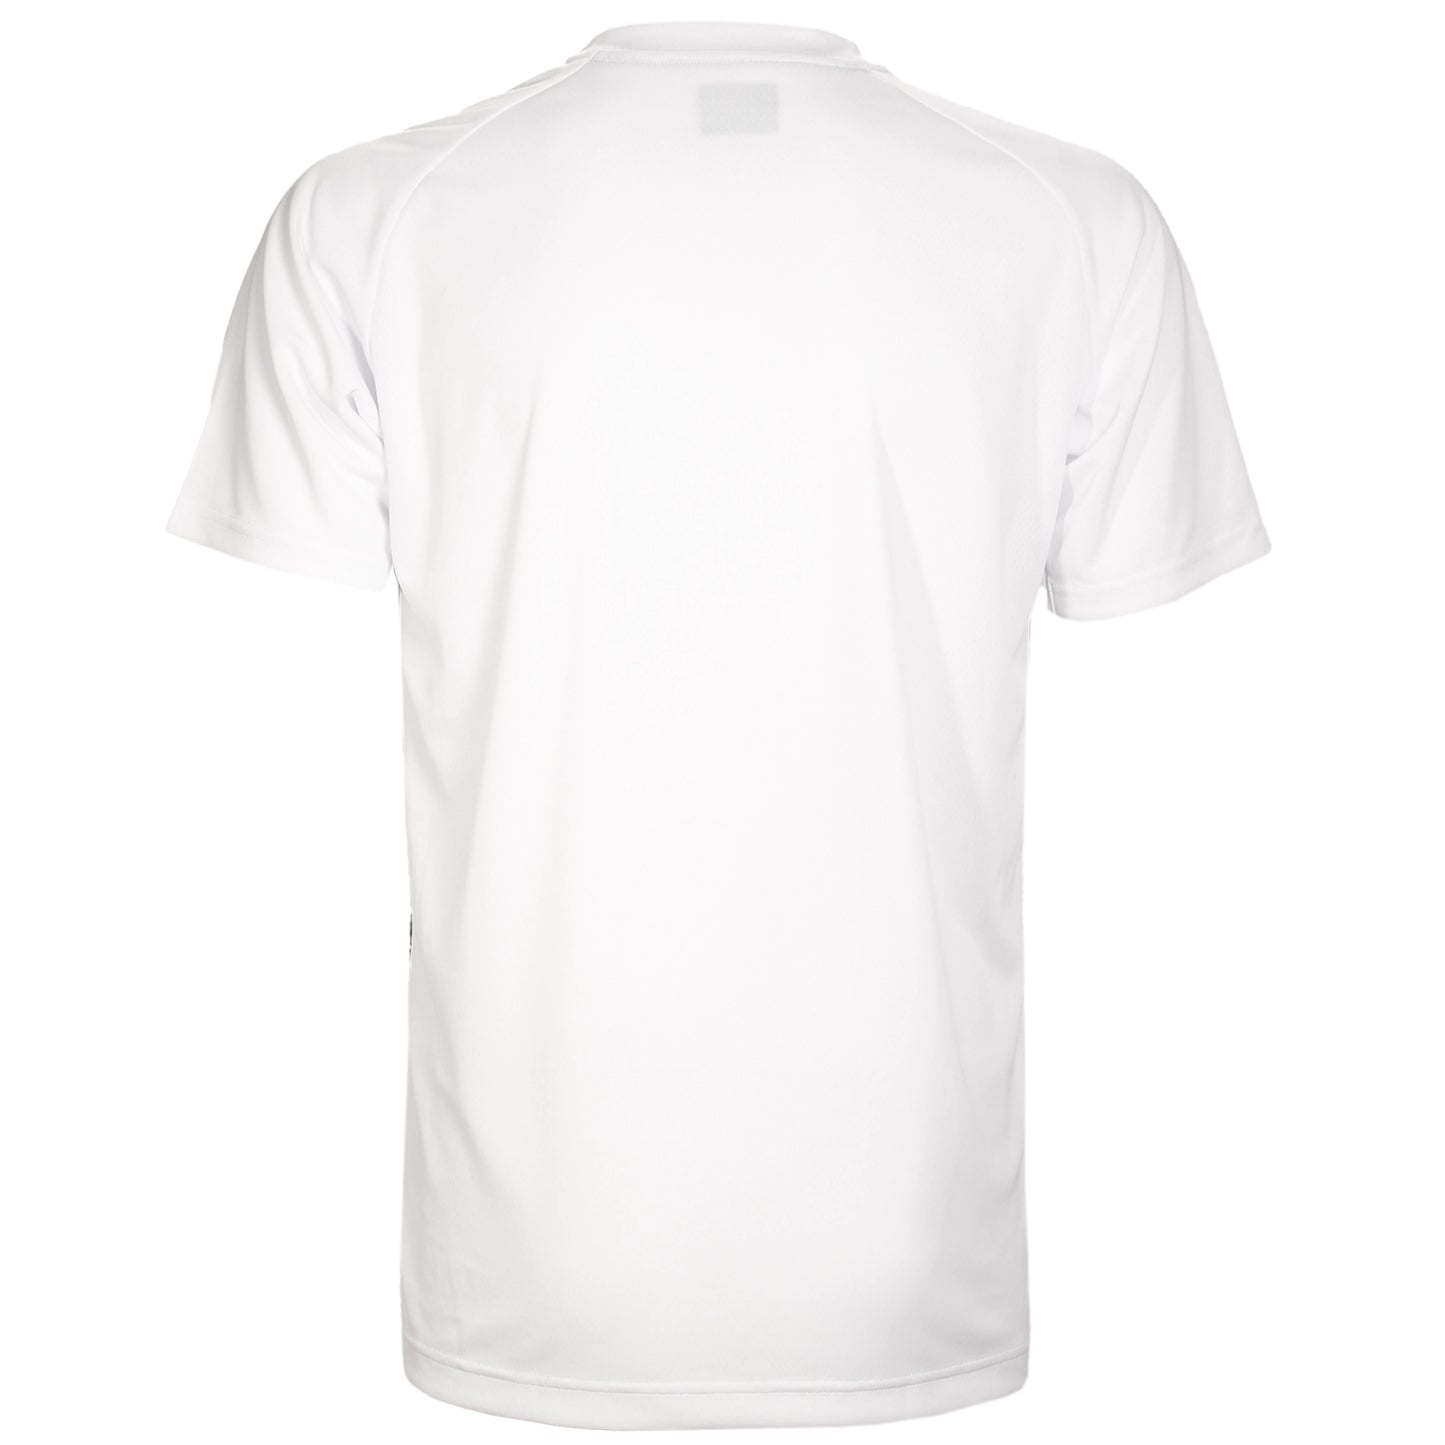 Yonex Men's T-Shirt 16692 White - Axelsen Replica